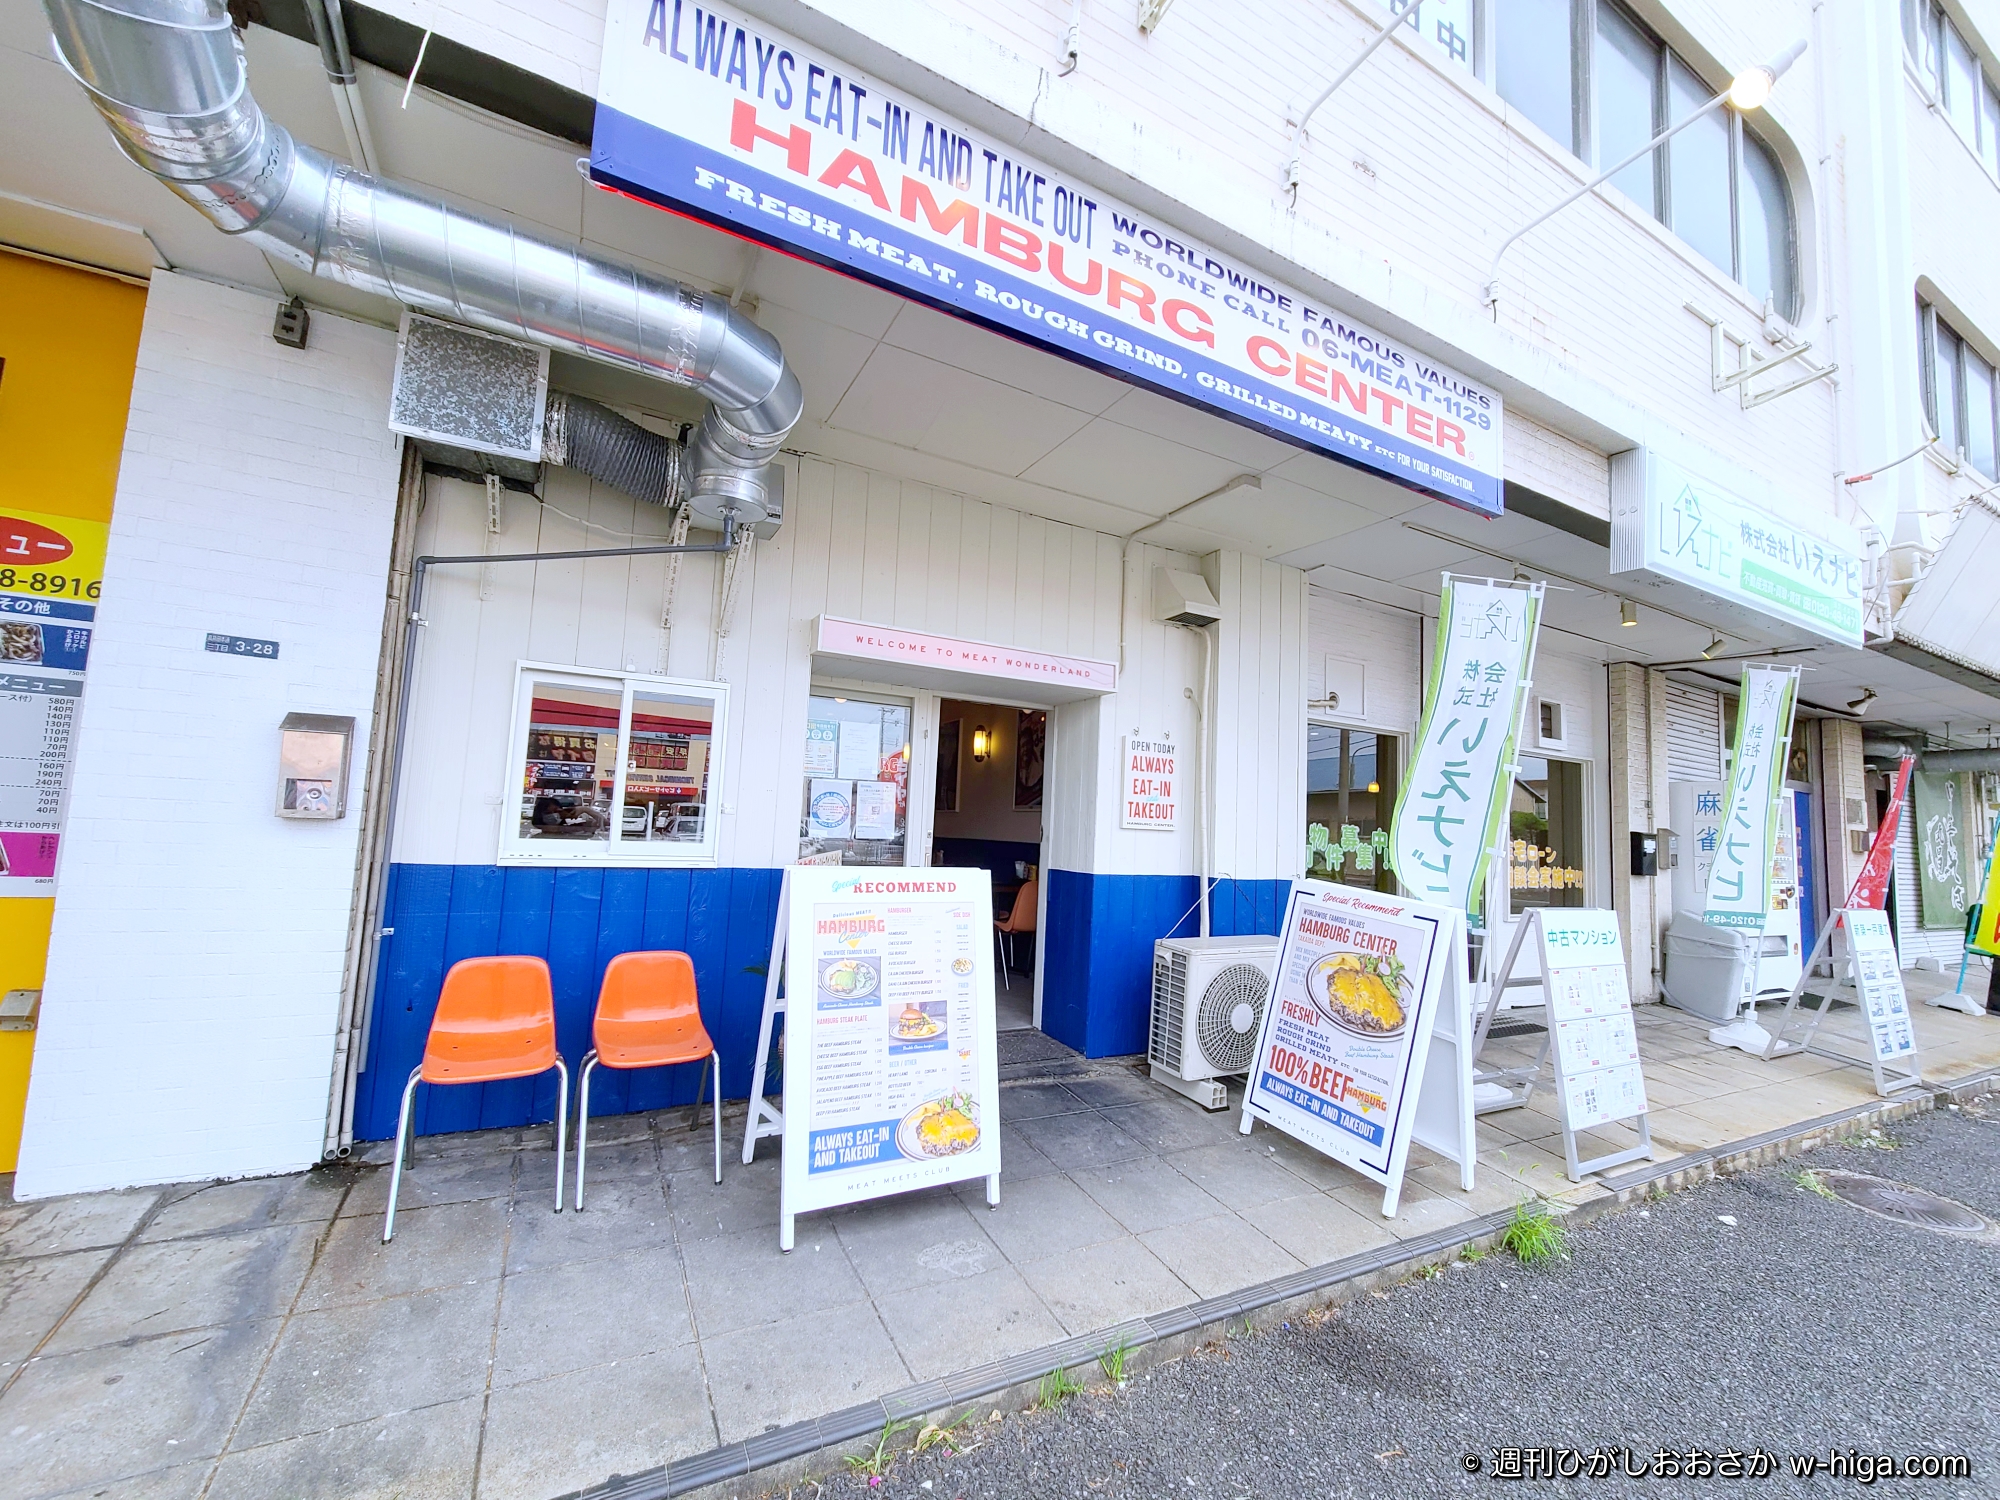 重量感のある実直なハンバーガーを地域の皆さんに 高井田に現れた本格アメリカンスタイルその名は ハンバーグセンター 週刊ひがしおおさか